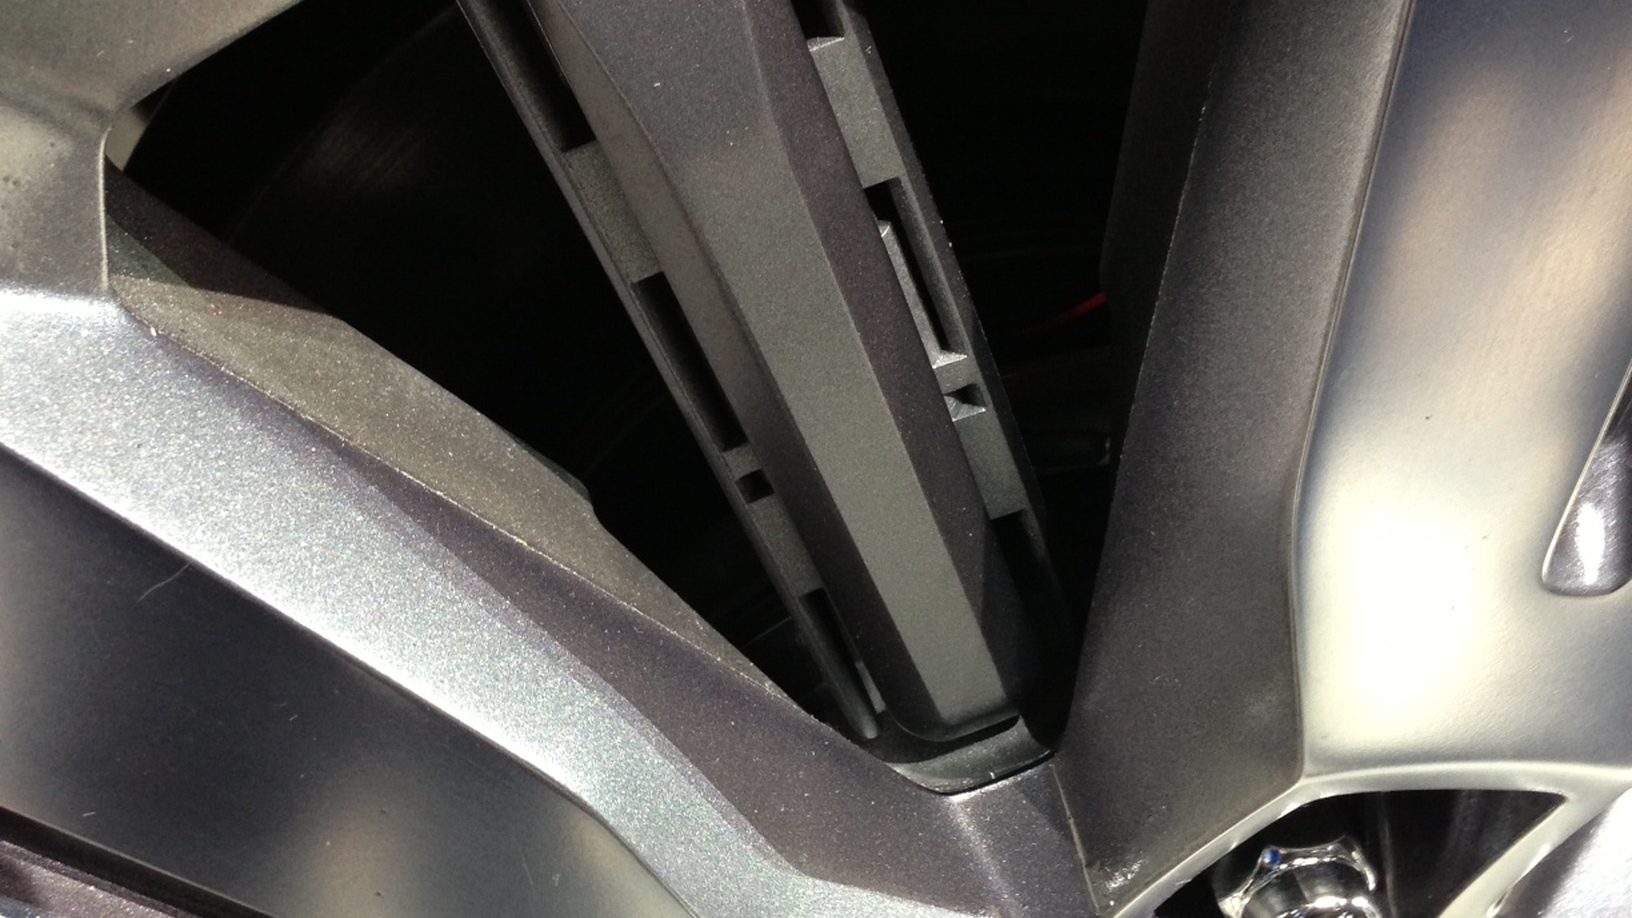 Active wheel shutters  -  Ford Atlas Concept  -  2013 Detroit Auto Show